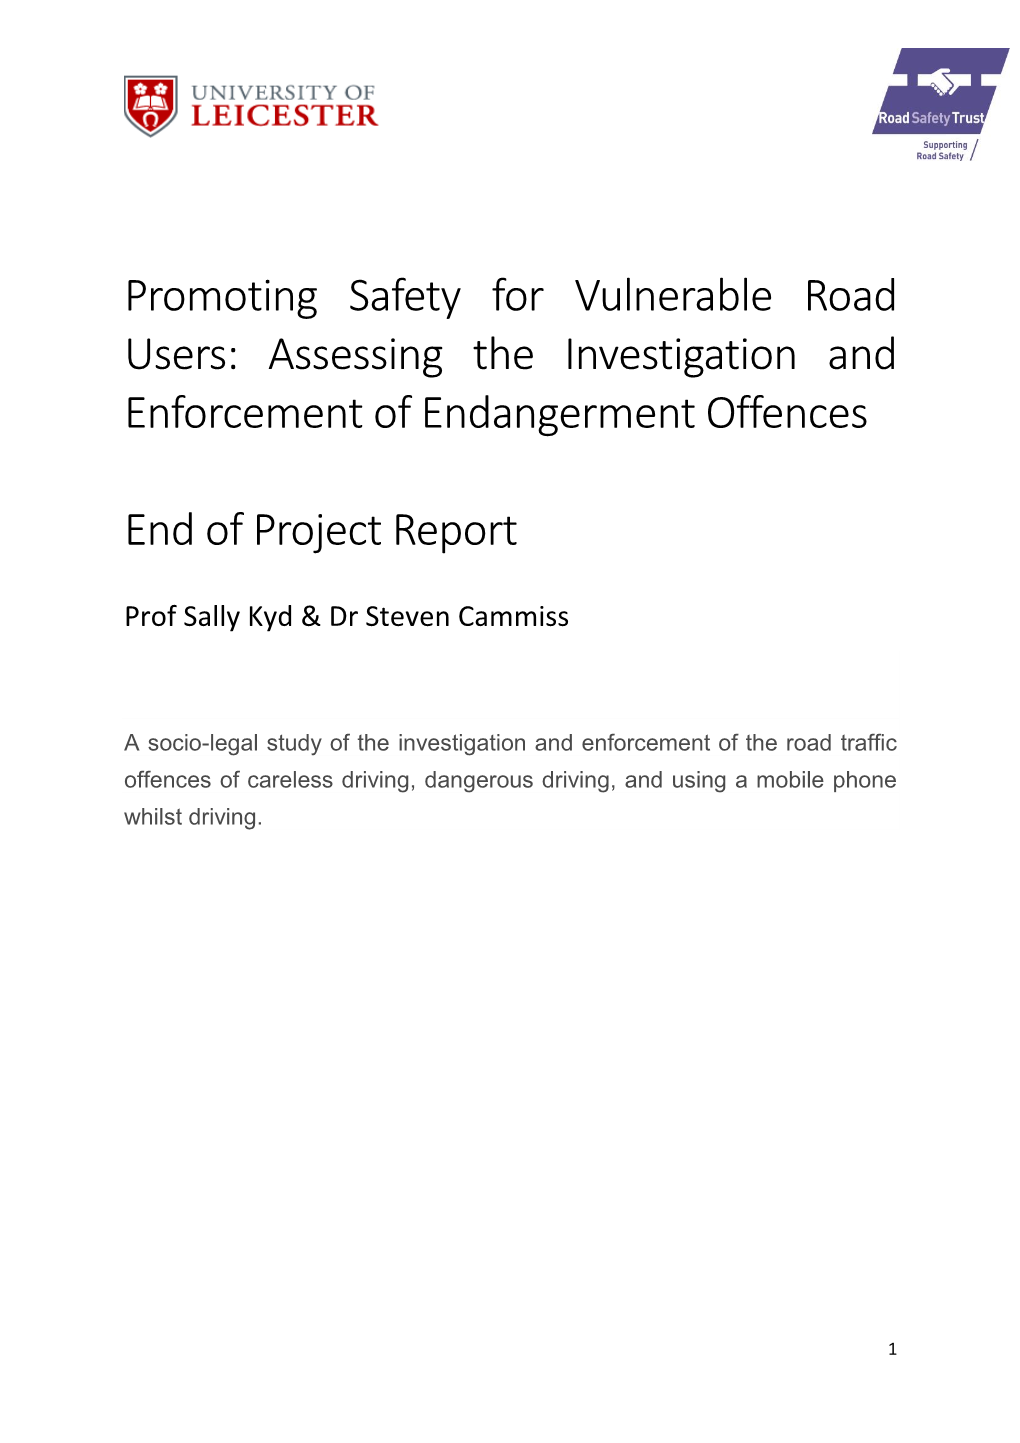 Enforcement of Endangerment Offences